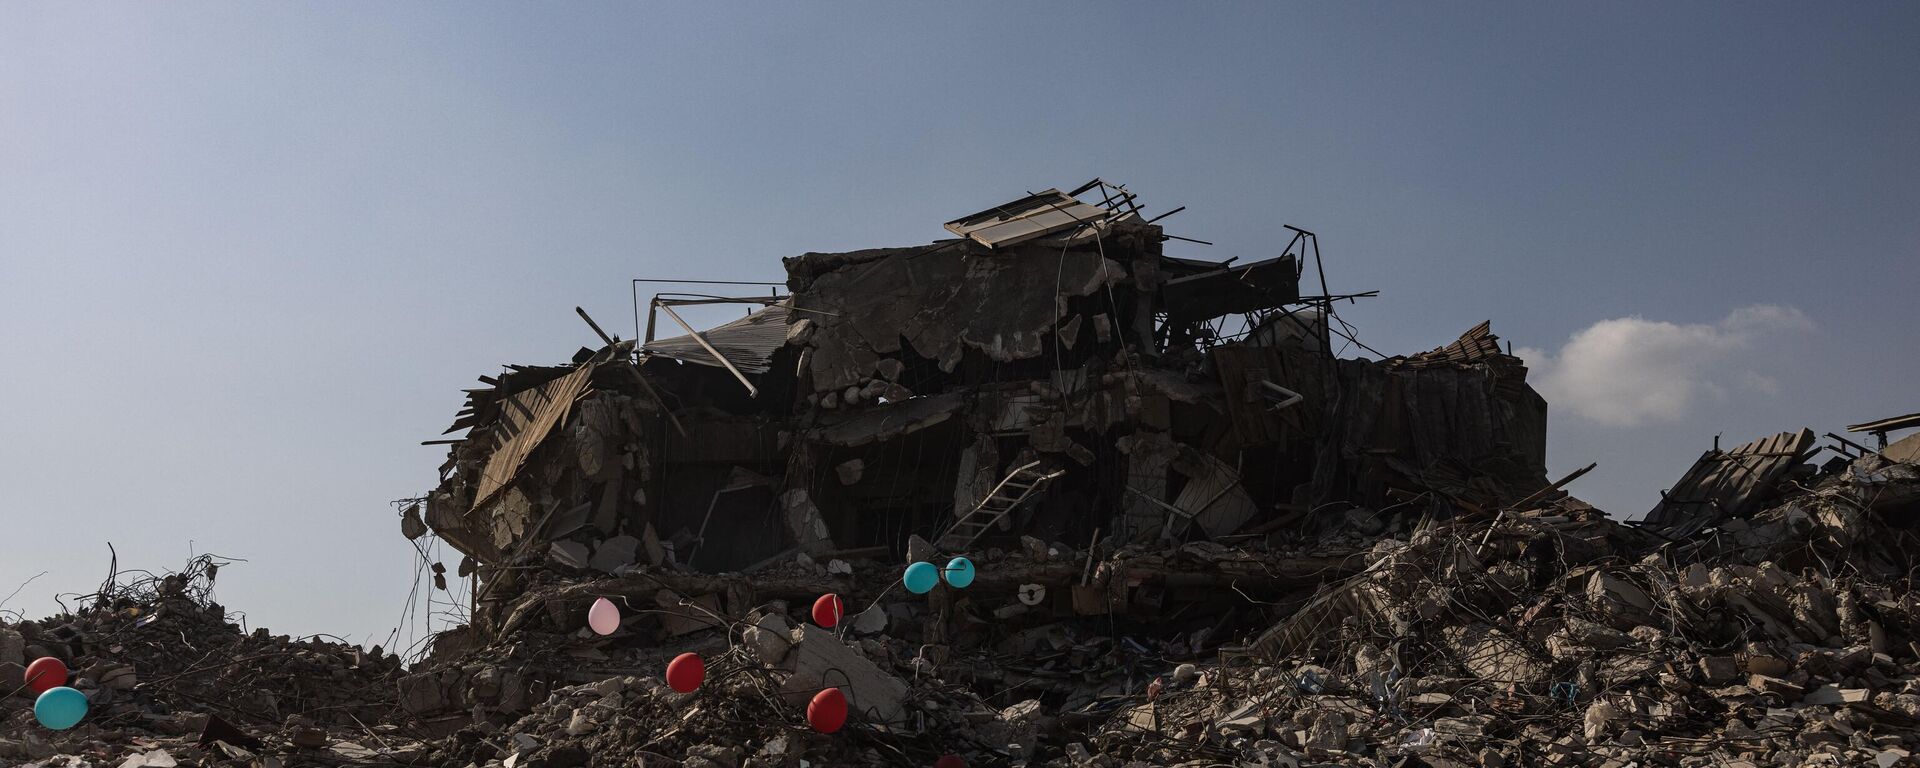 Những quả bóng bay màu đỏ treo trên đống đổ nát những tòa nhà bị sập như biểu tượng của đồ chơi cuối cùng của những đứa trẻ thiệt mạng trong trận động đất ở thành phố Antakya, Thổ Nhĩ Kỳ. - Sputnik Việt Nam, 1920, 26.02.2023